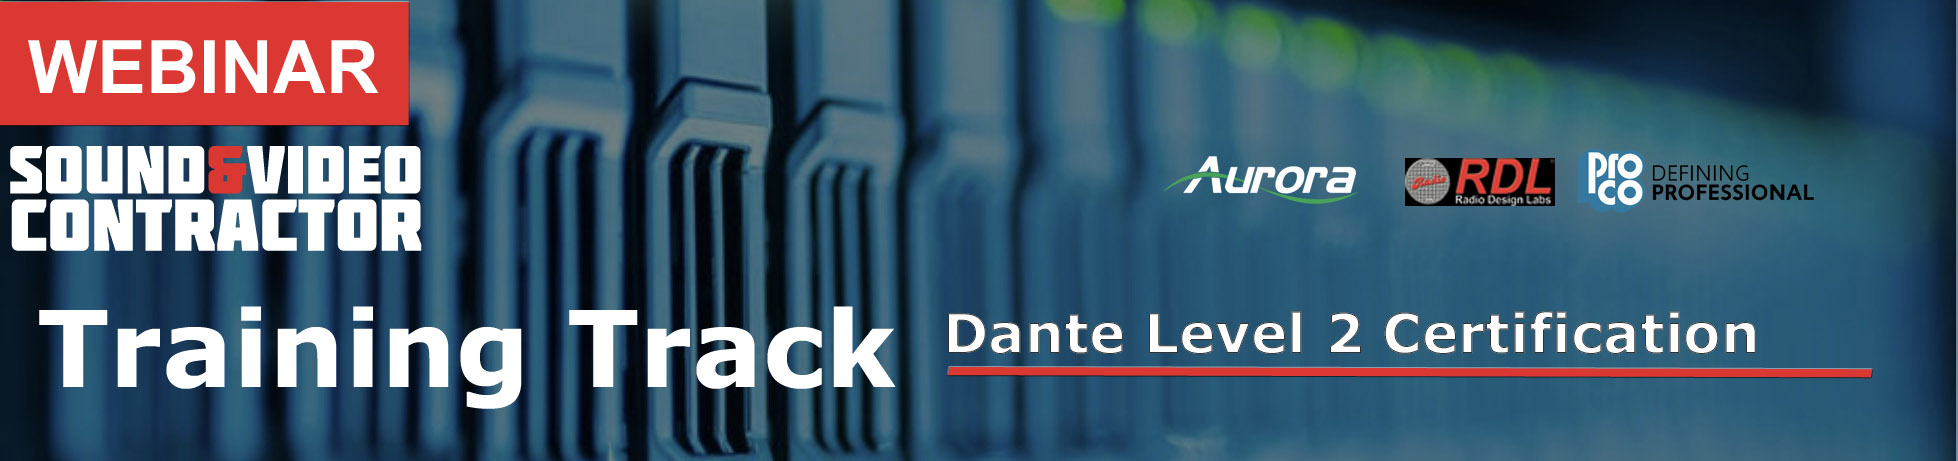 Dante Level 2 Certification Free Webinar TSDCA